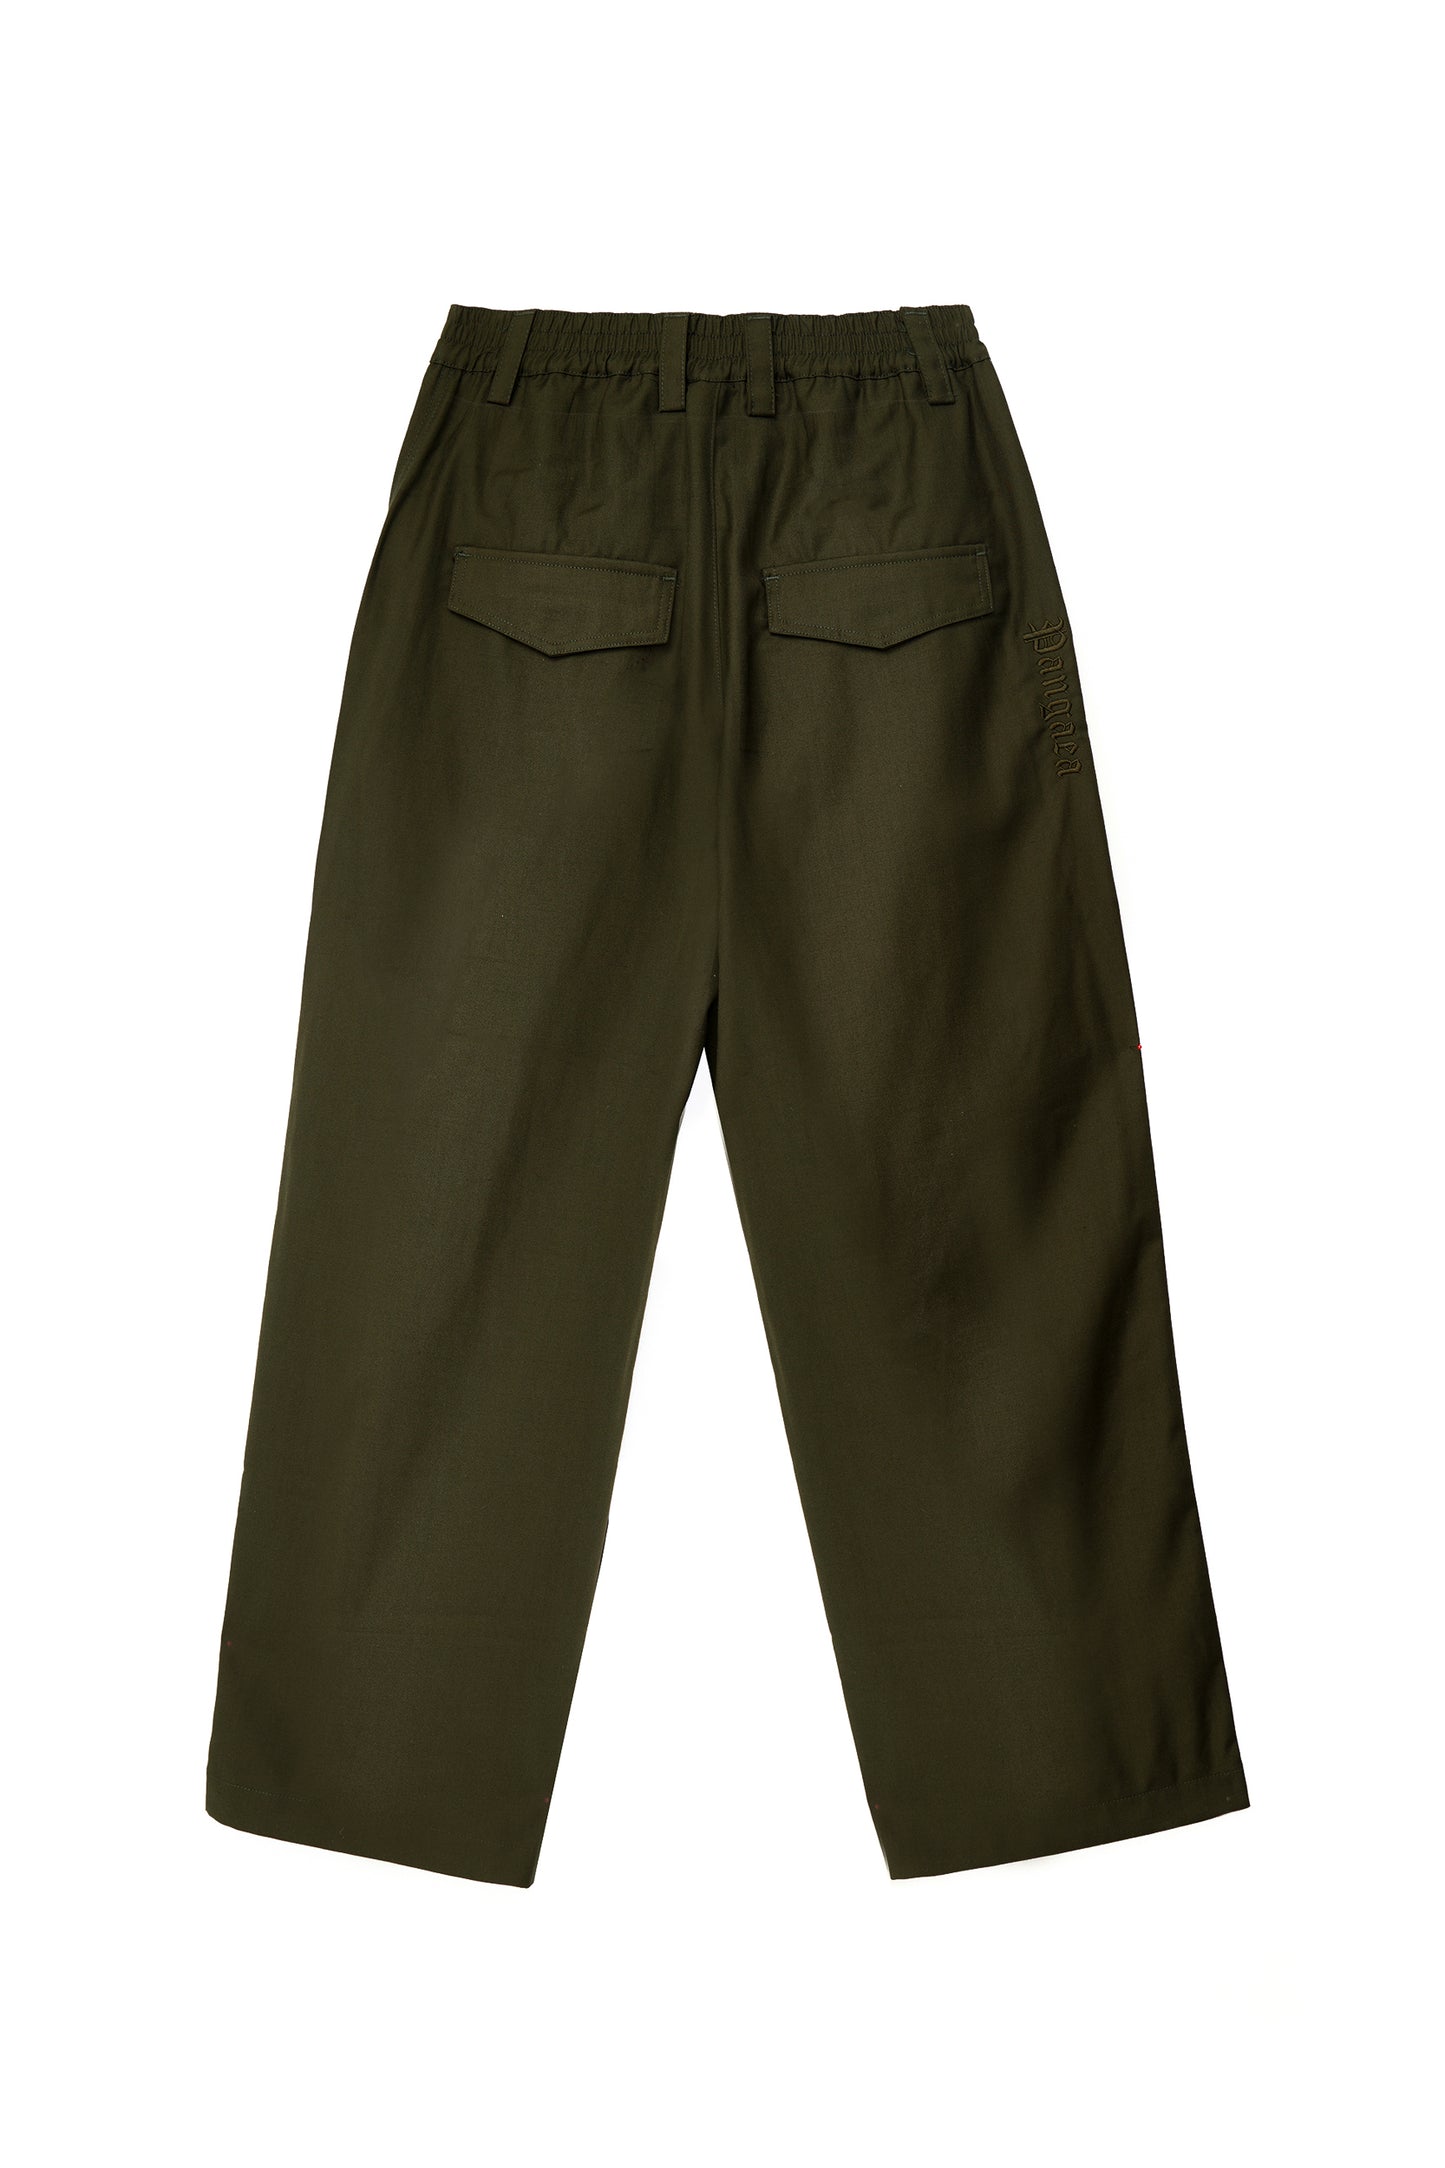 Suit Style Pants Olive